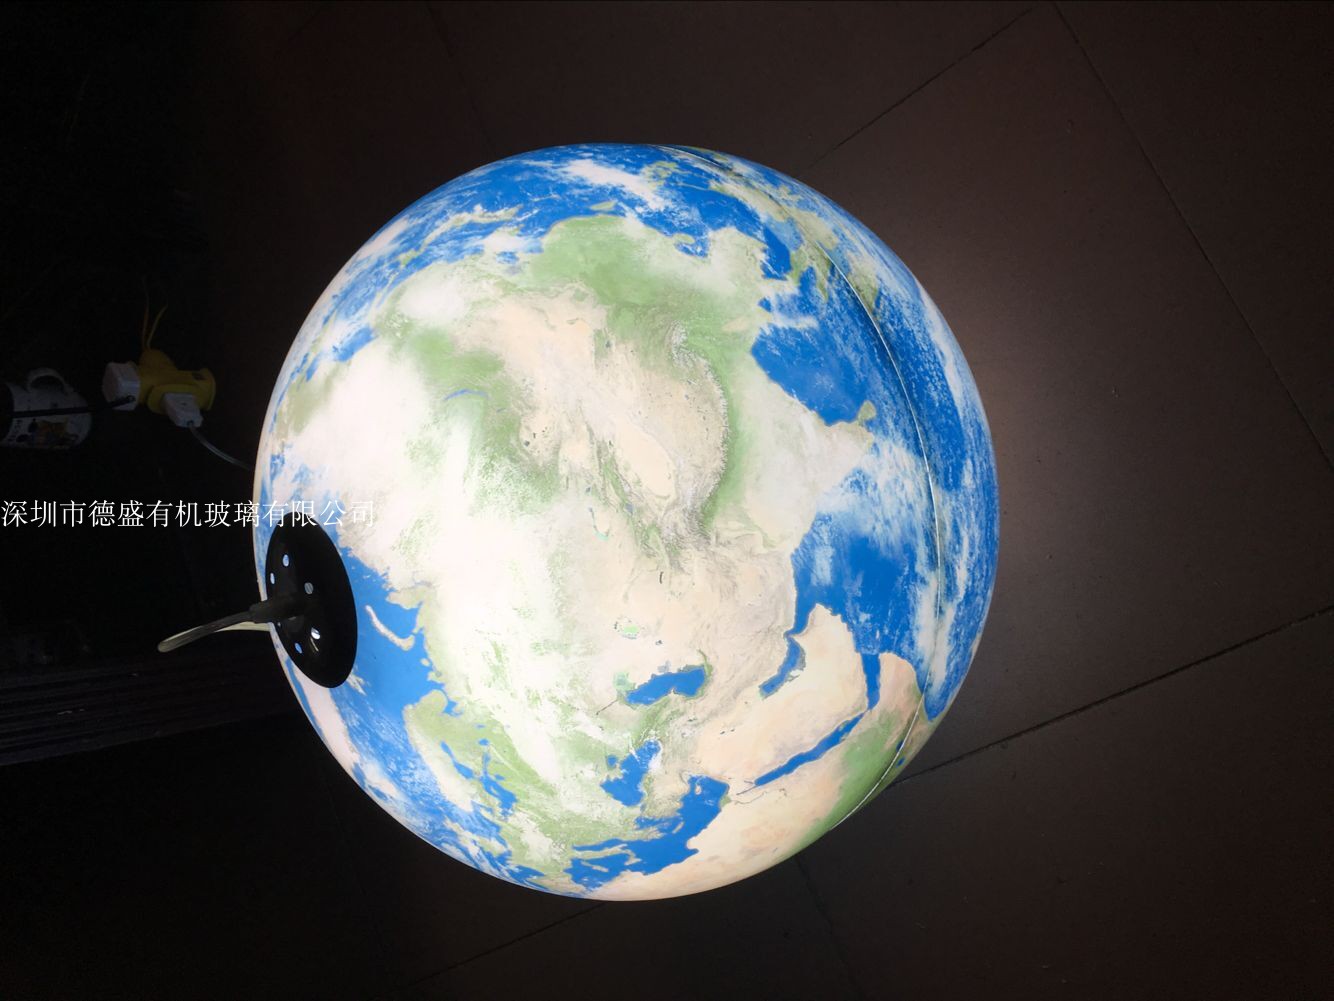 亚克力八大星球 有机玻璃球星灯 教材演示地球仪 行星模型